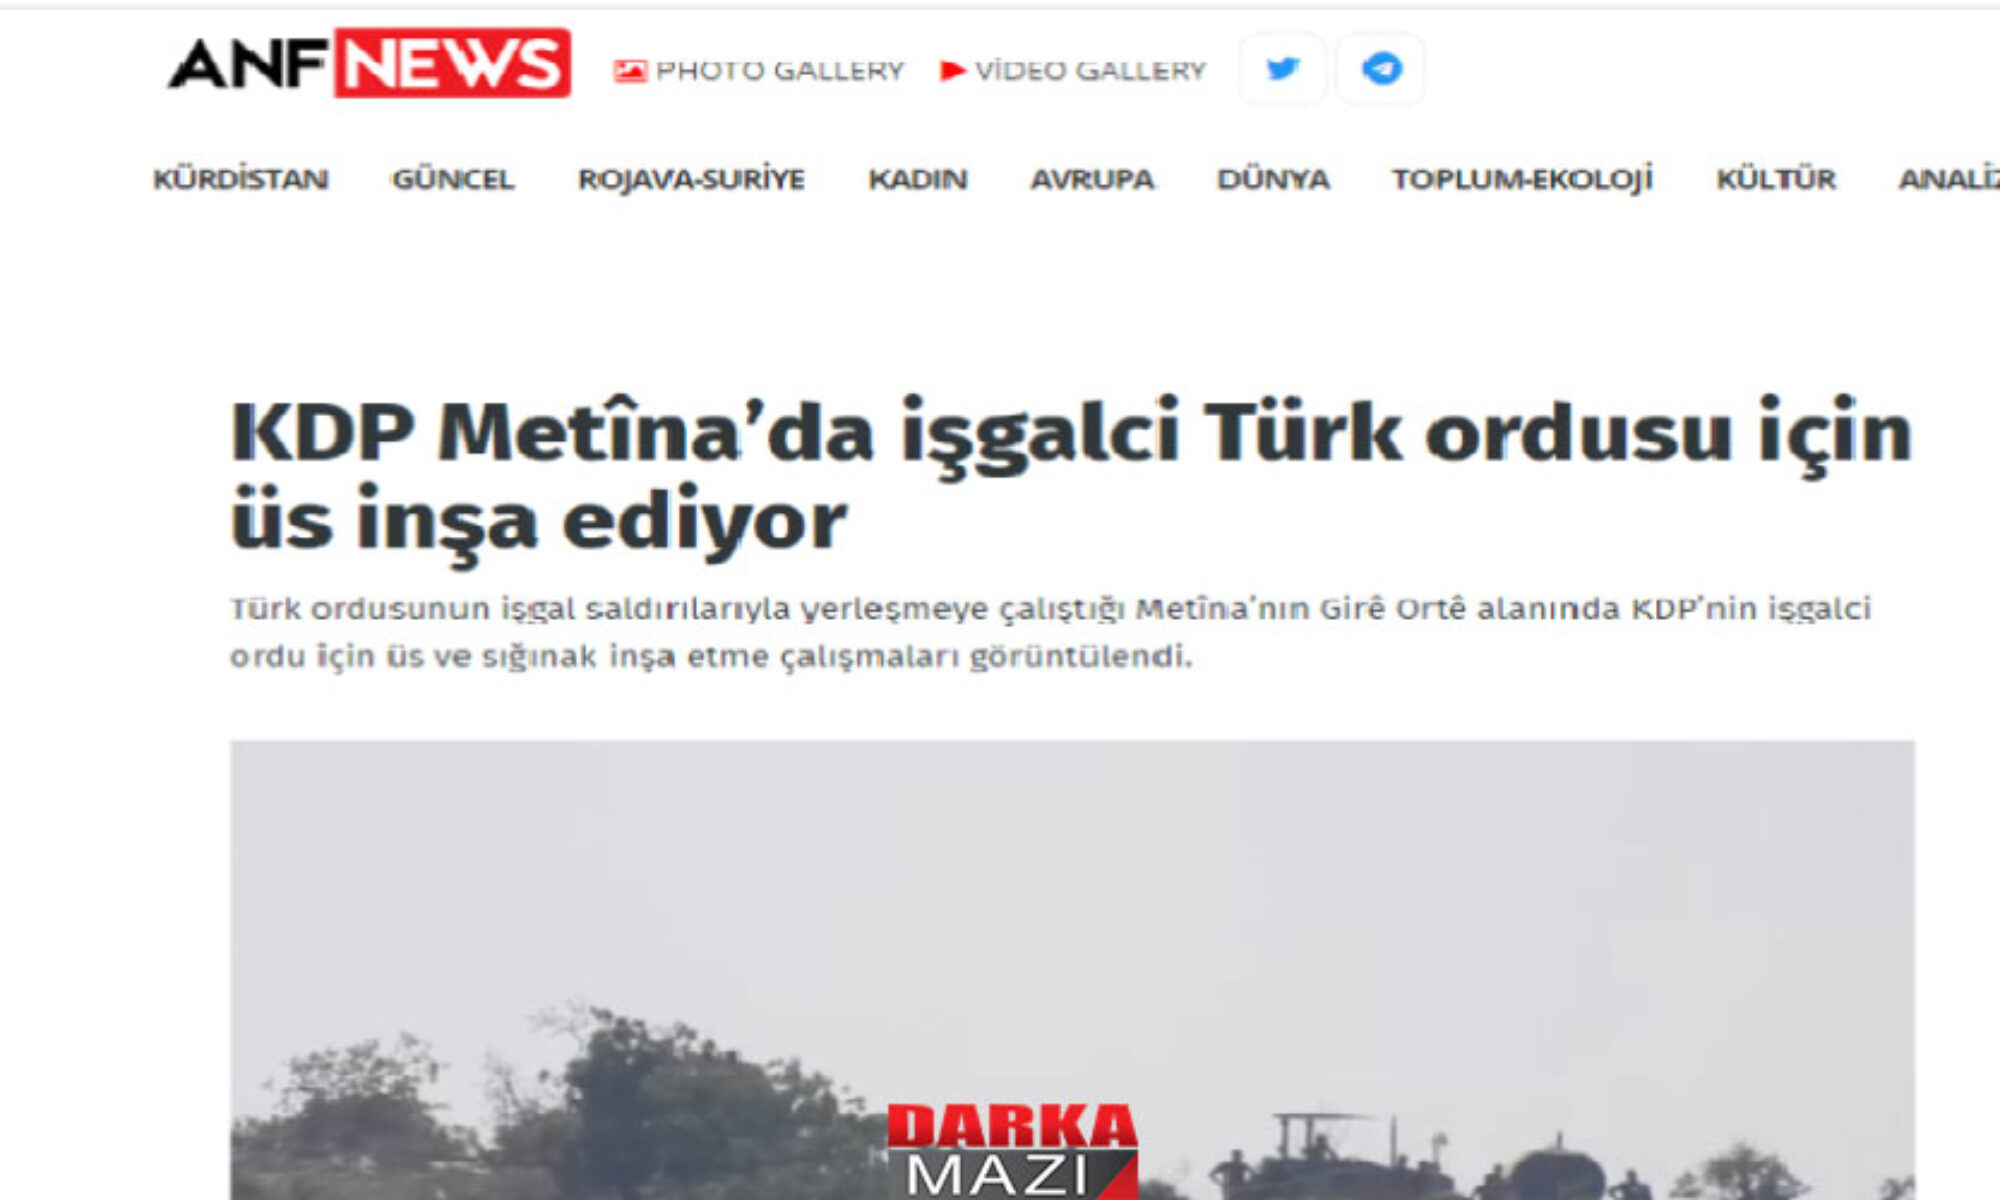 Peşmerge bir tepeyi daha PKK-TSK çatışmasından kurtardı, PKK medyası Peşmerge TSK’ya karakol yapıyor diye haber yaptı